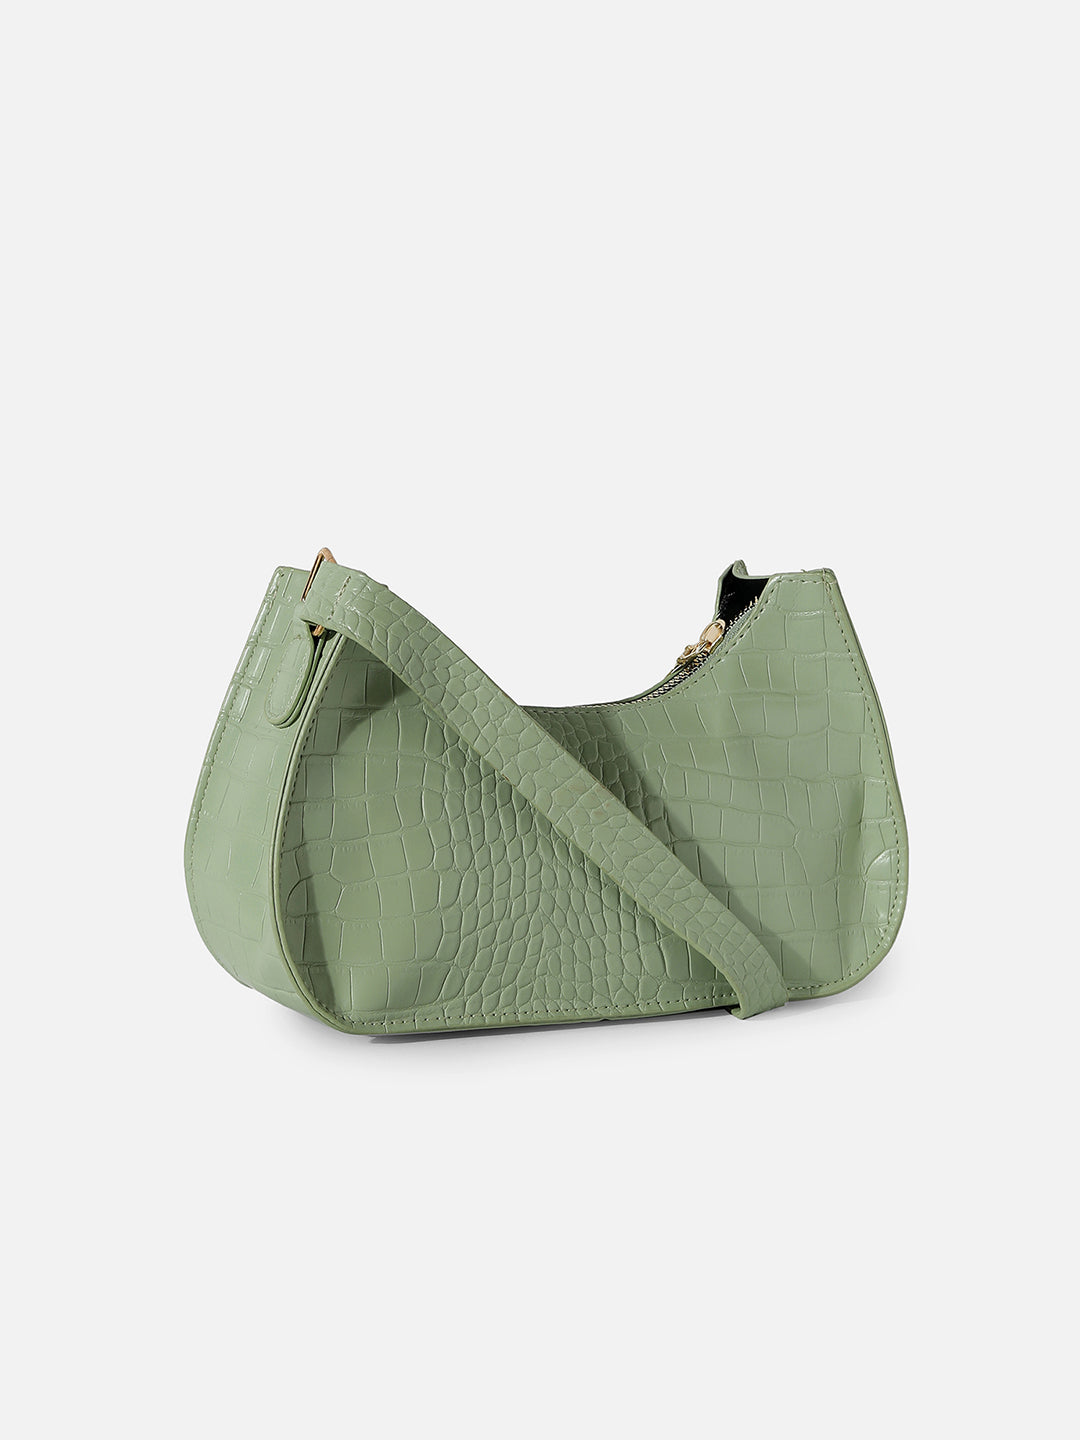 Croc-A-Diva Green Mini Bag